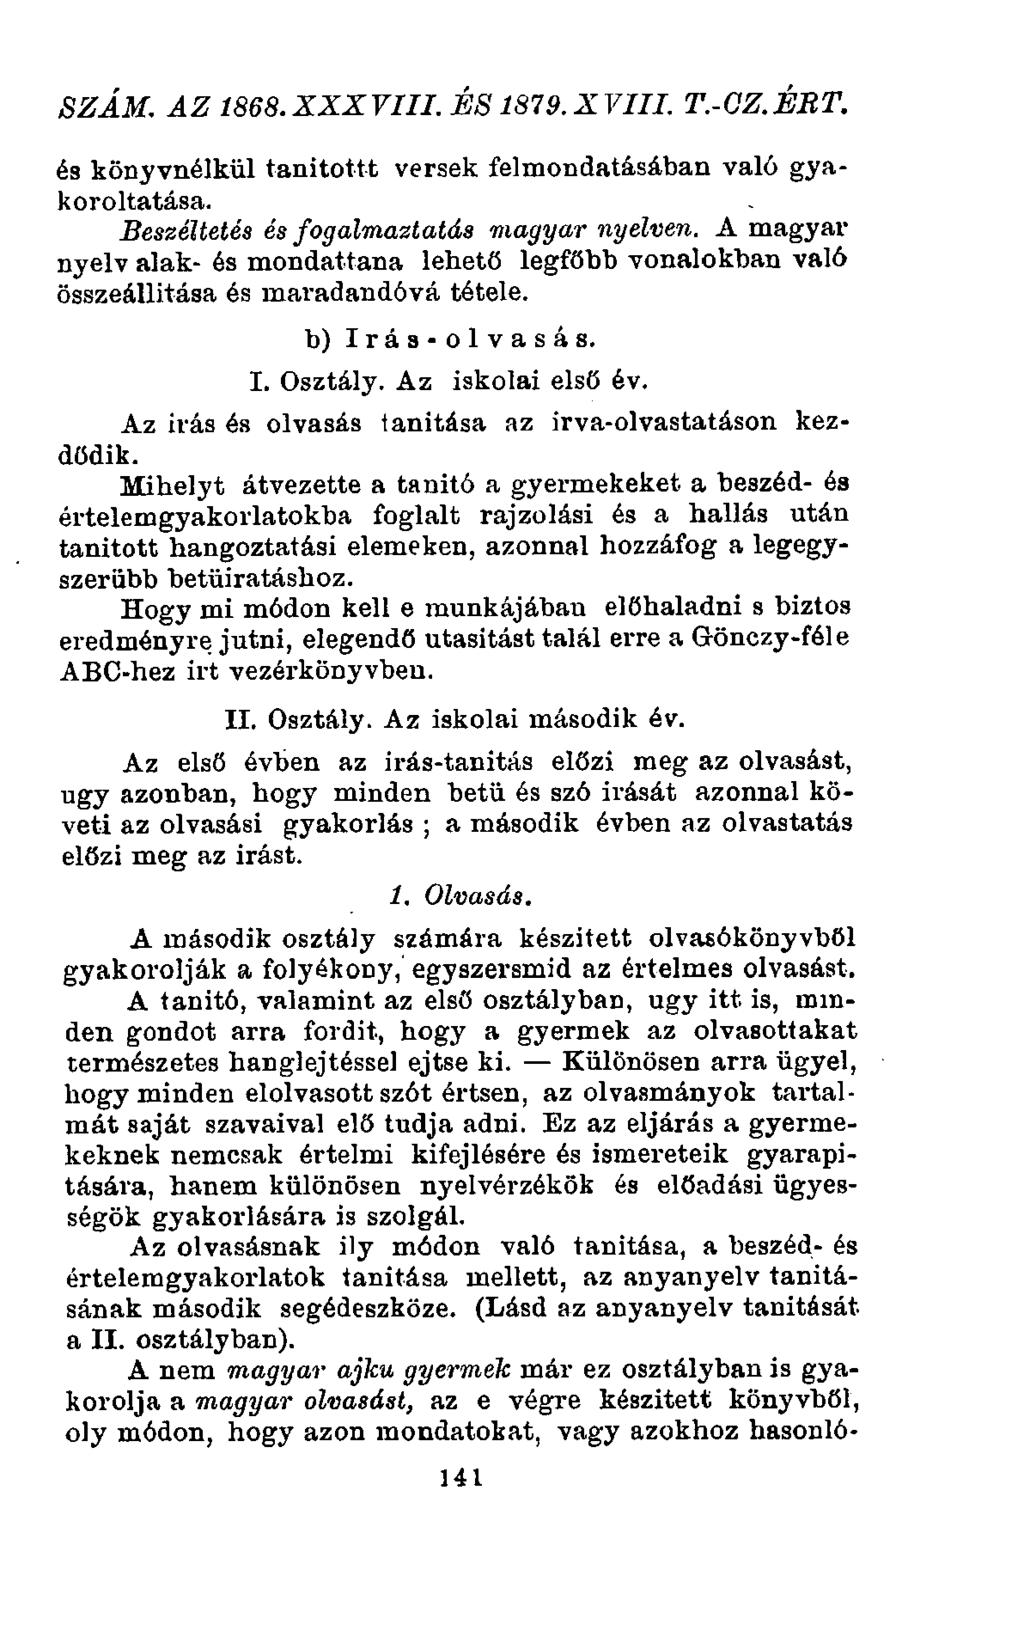 szám. az 1868. xxx viii. és 1879. xviii. t.-oz. ért. és könyvnélkül tanitottt versek felmondatásában való gyakoroltatása. Beszéltetés és fogalmaztatás magyar nyelven.